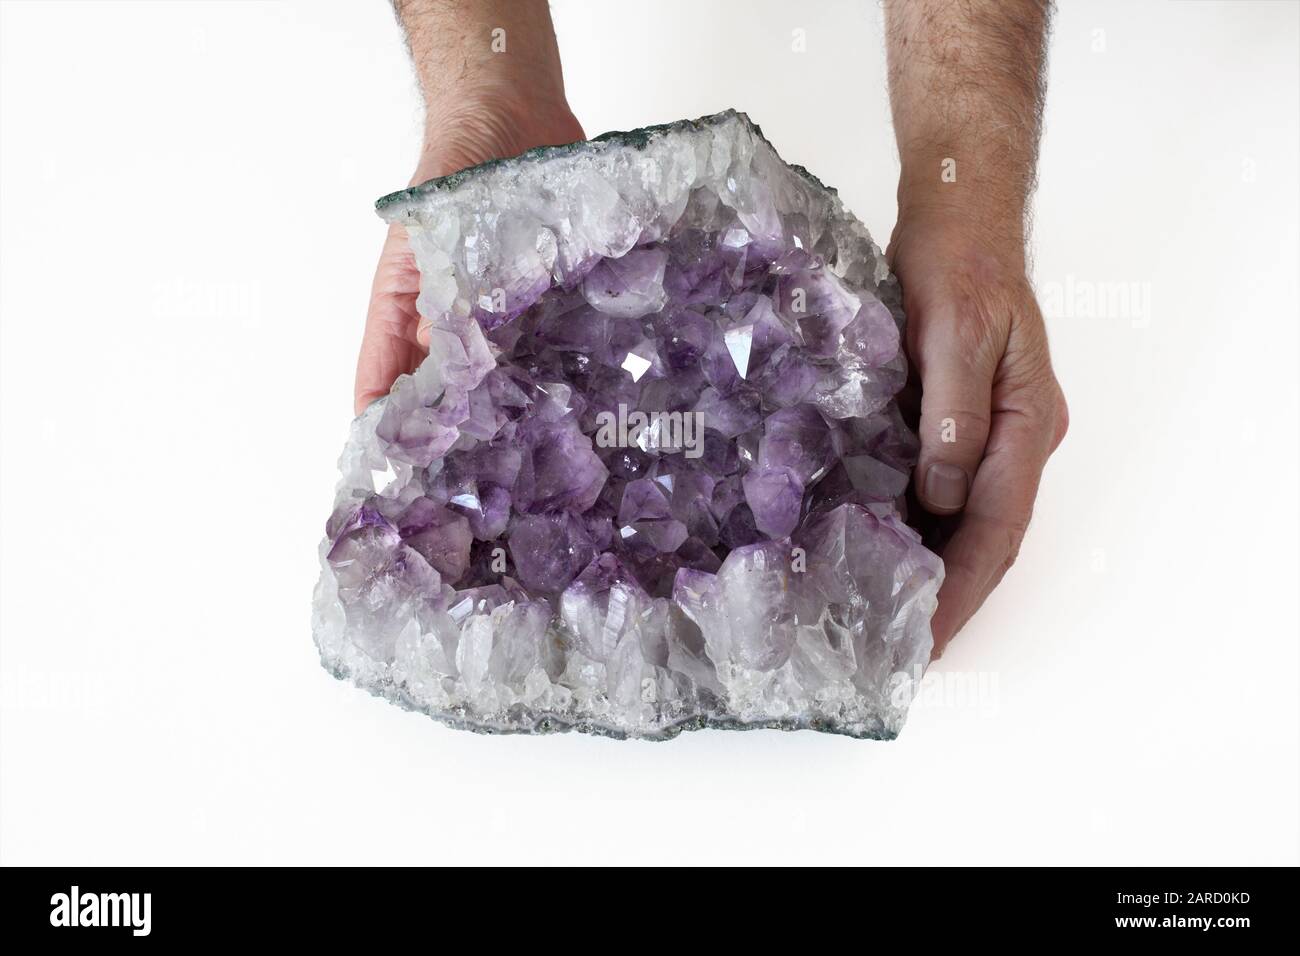 Une personne tenant un échantillon d'améthyste, montrant la cavité cristalline exposée dans une section de roche. Banque D'Images